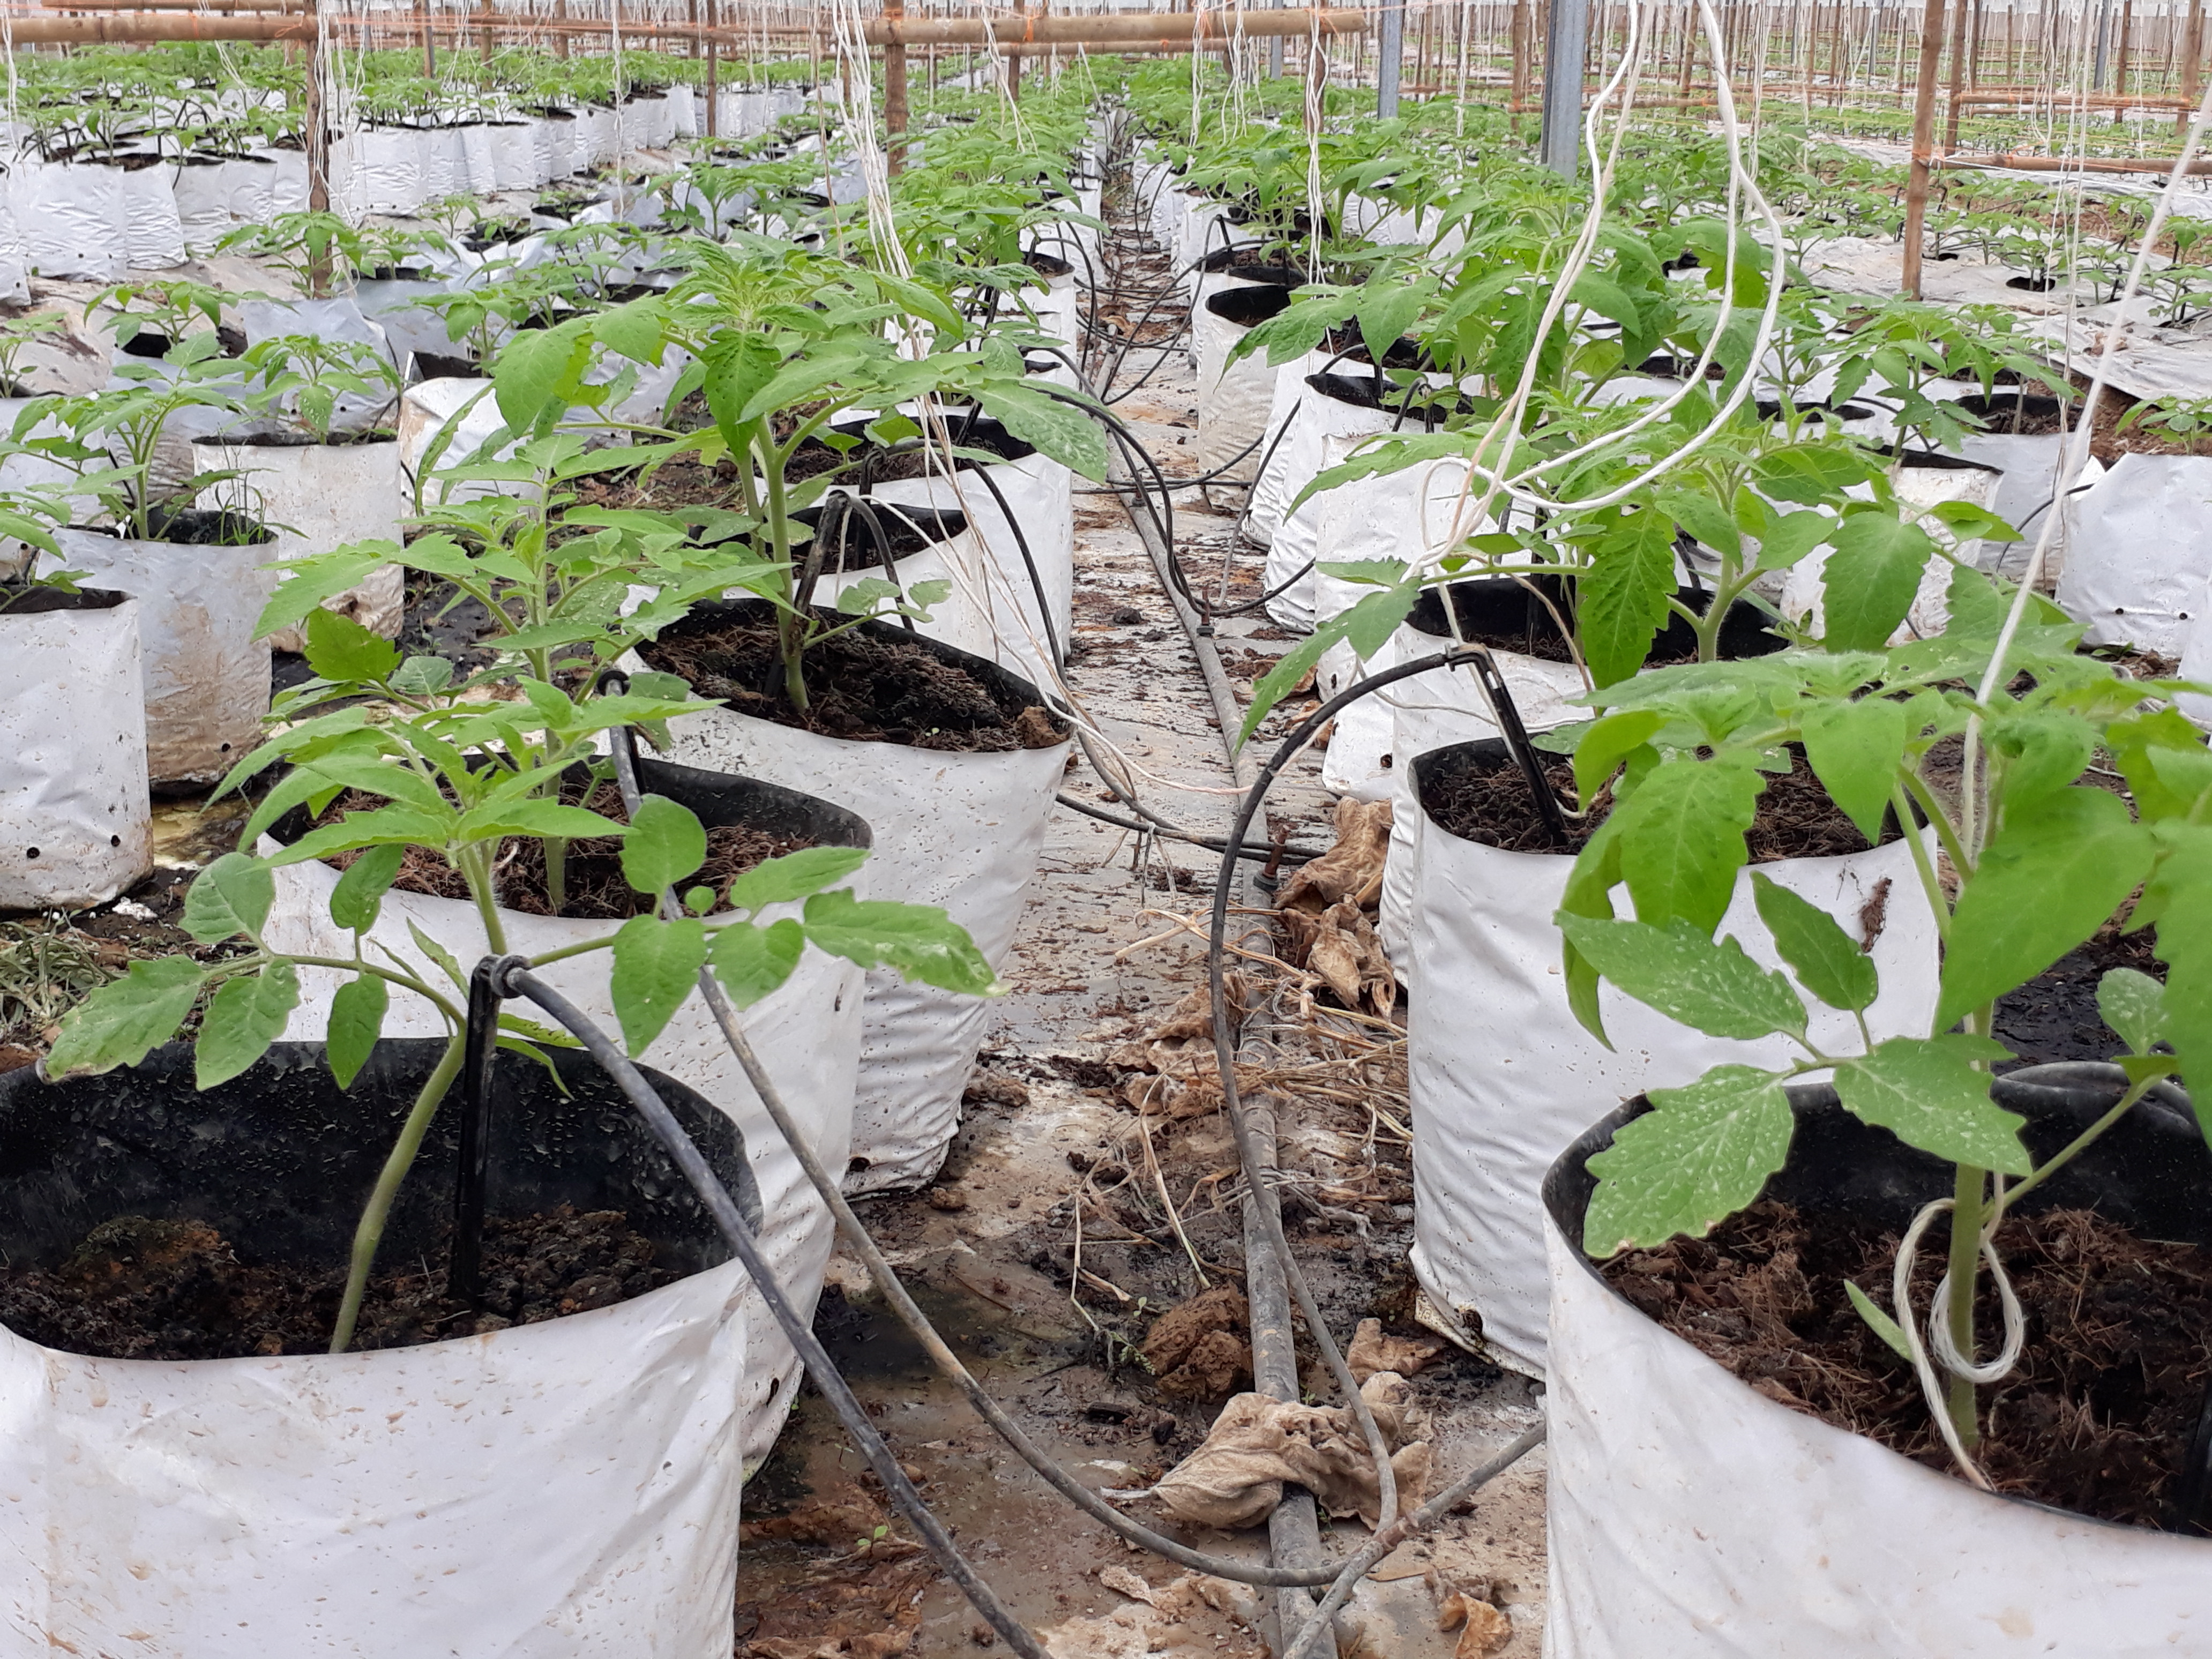 Để đối chững hiệu quả, bên cạnh trồng trên đất, HTX còn trồng theo phương pháp trong bầu bã dừa trộn phân. Cây cà chua từ khi trồng và thu hoạch khoảng 2 tháng. Ảnh: Minh Hạnh